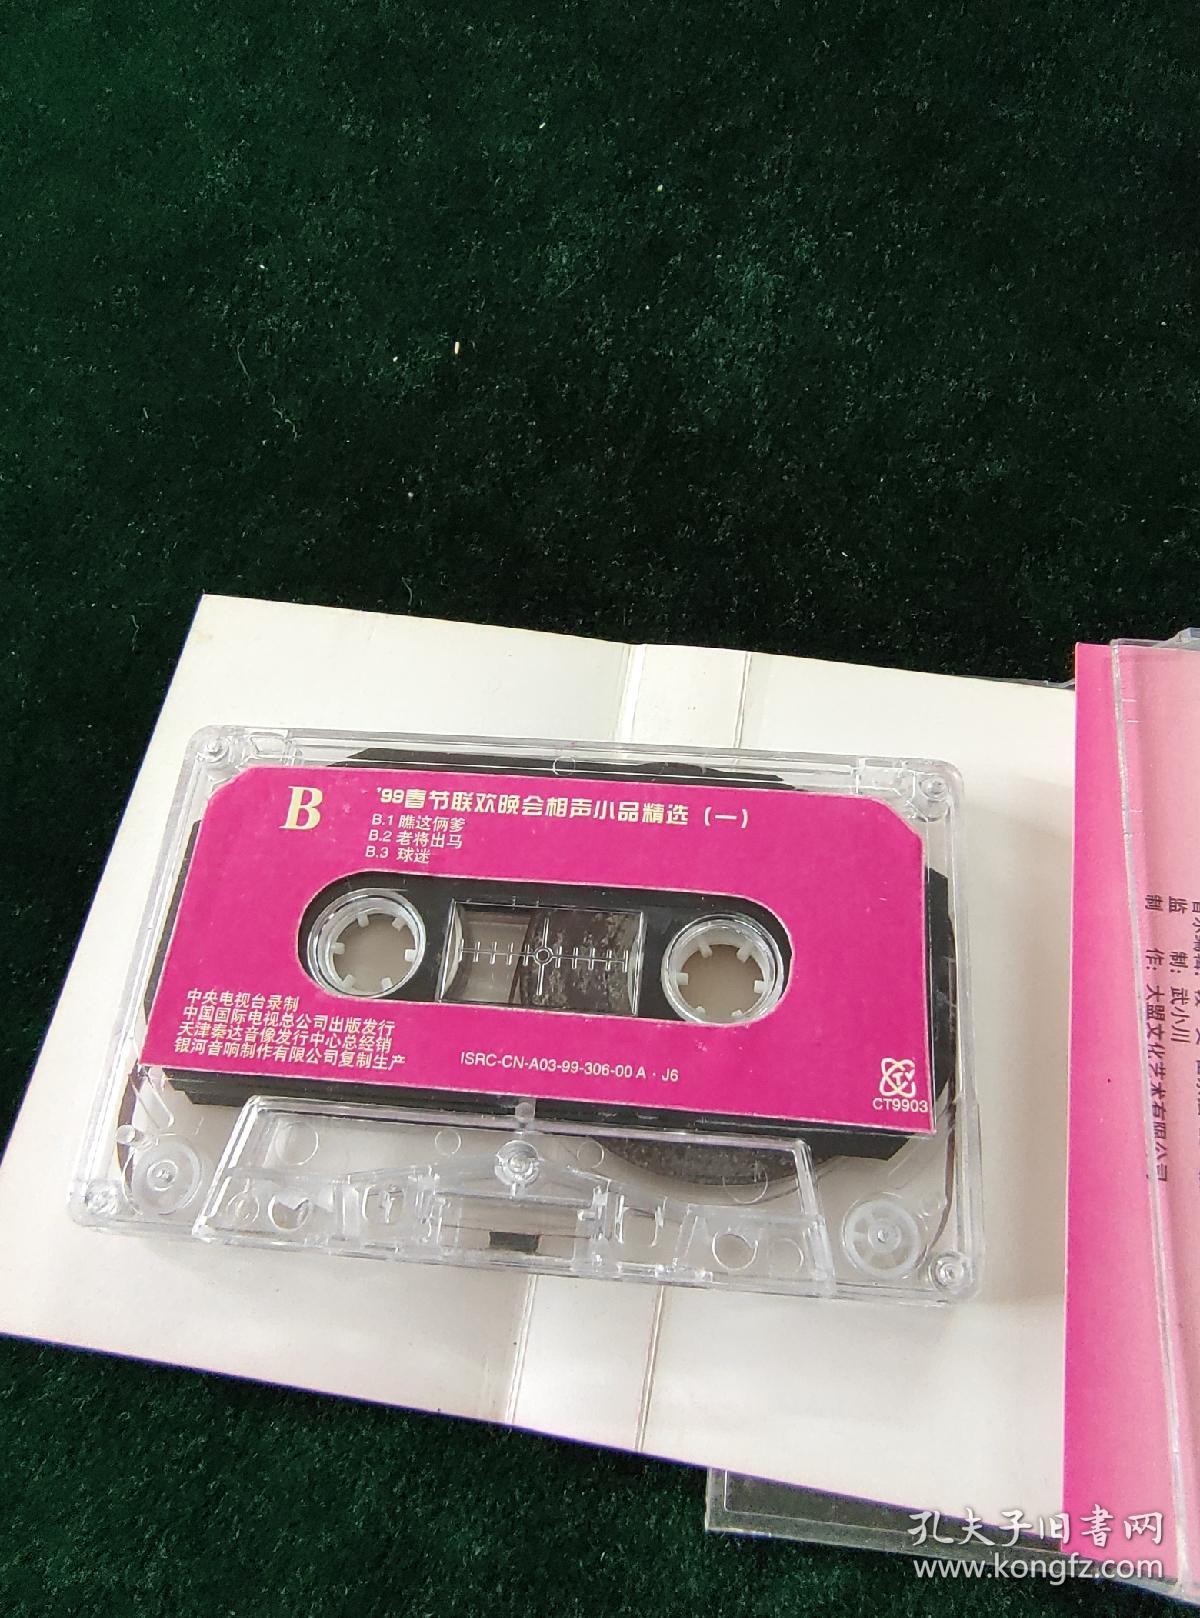 《一九九九年春节联欢晚会小品相声精选（一）》磁带，中国国际电视总公司出版发行